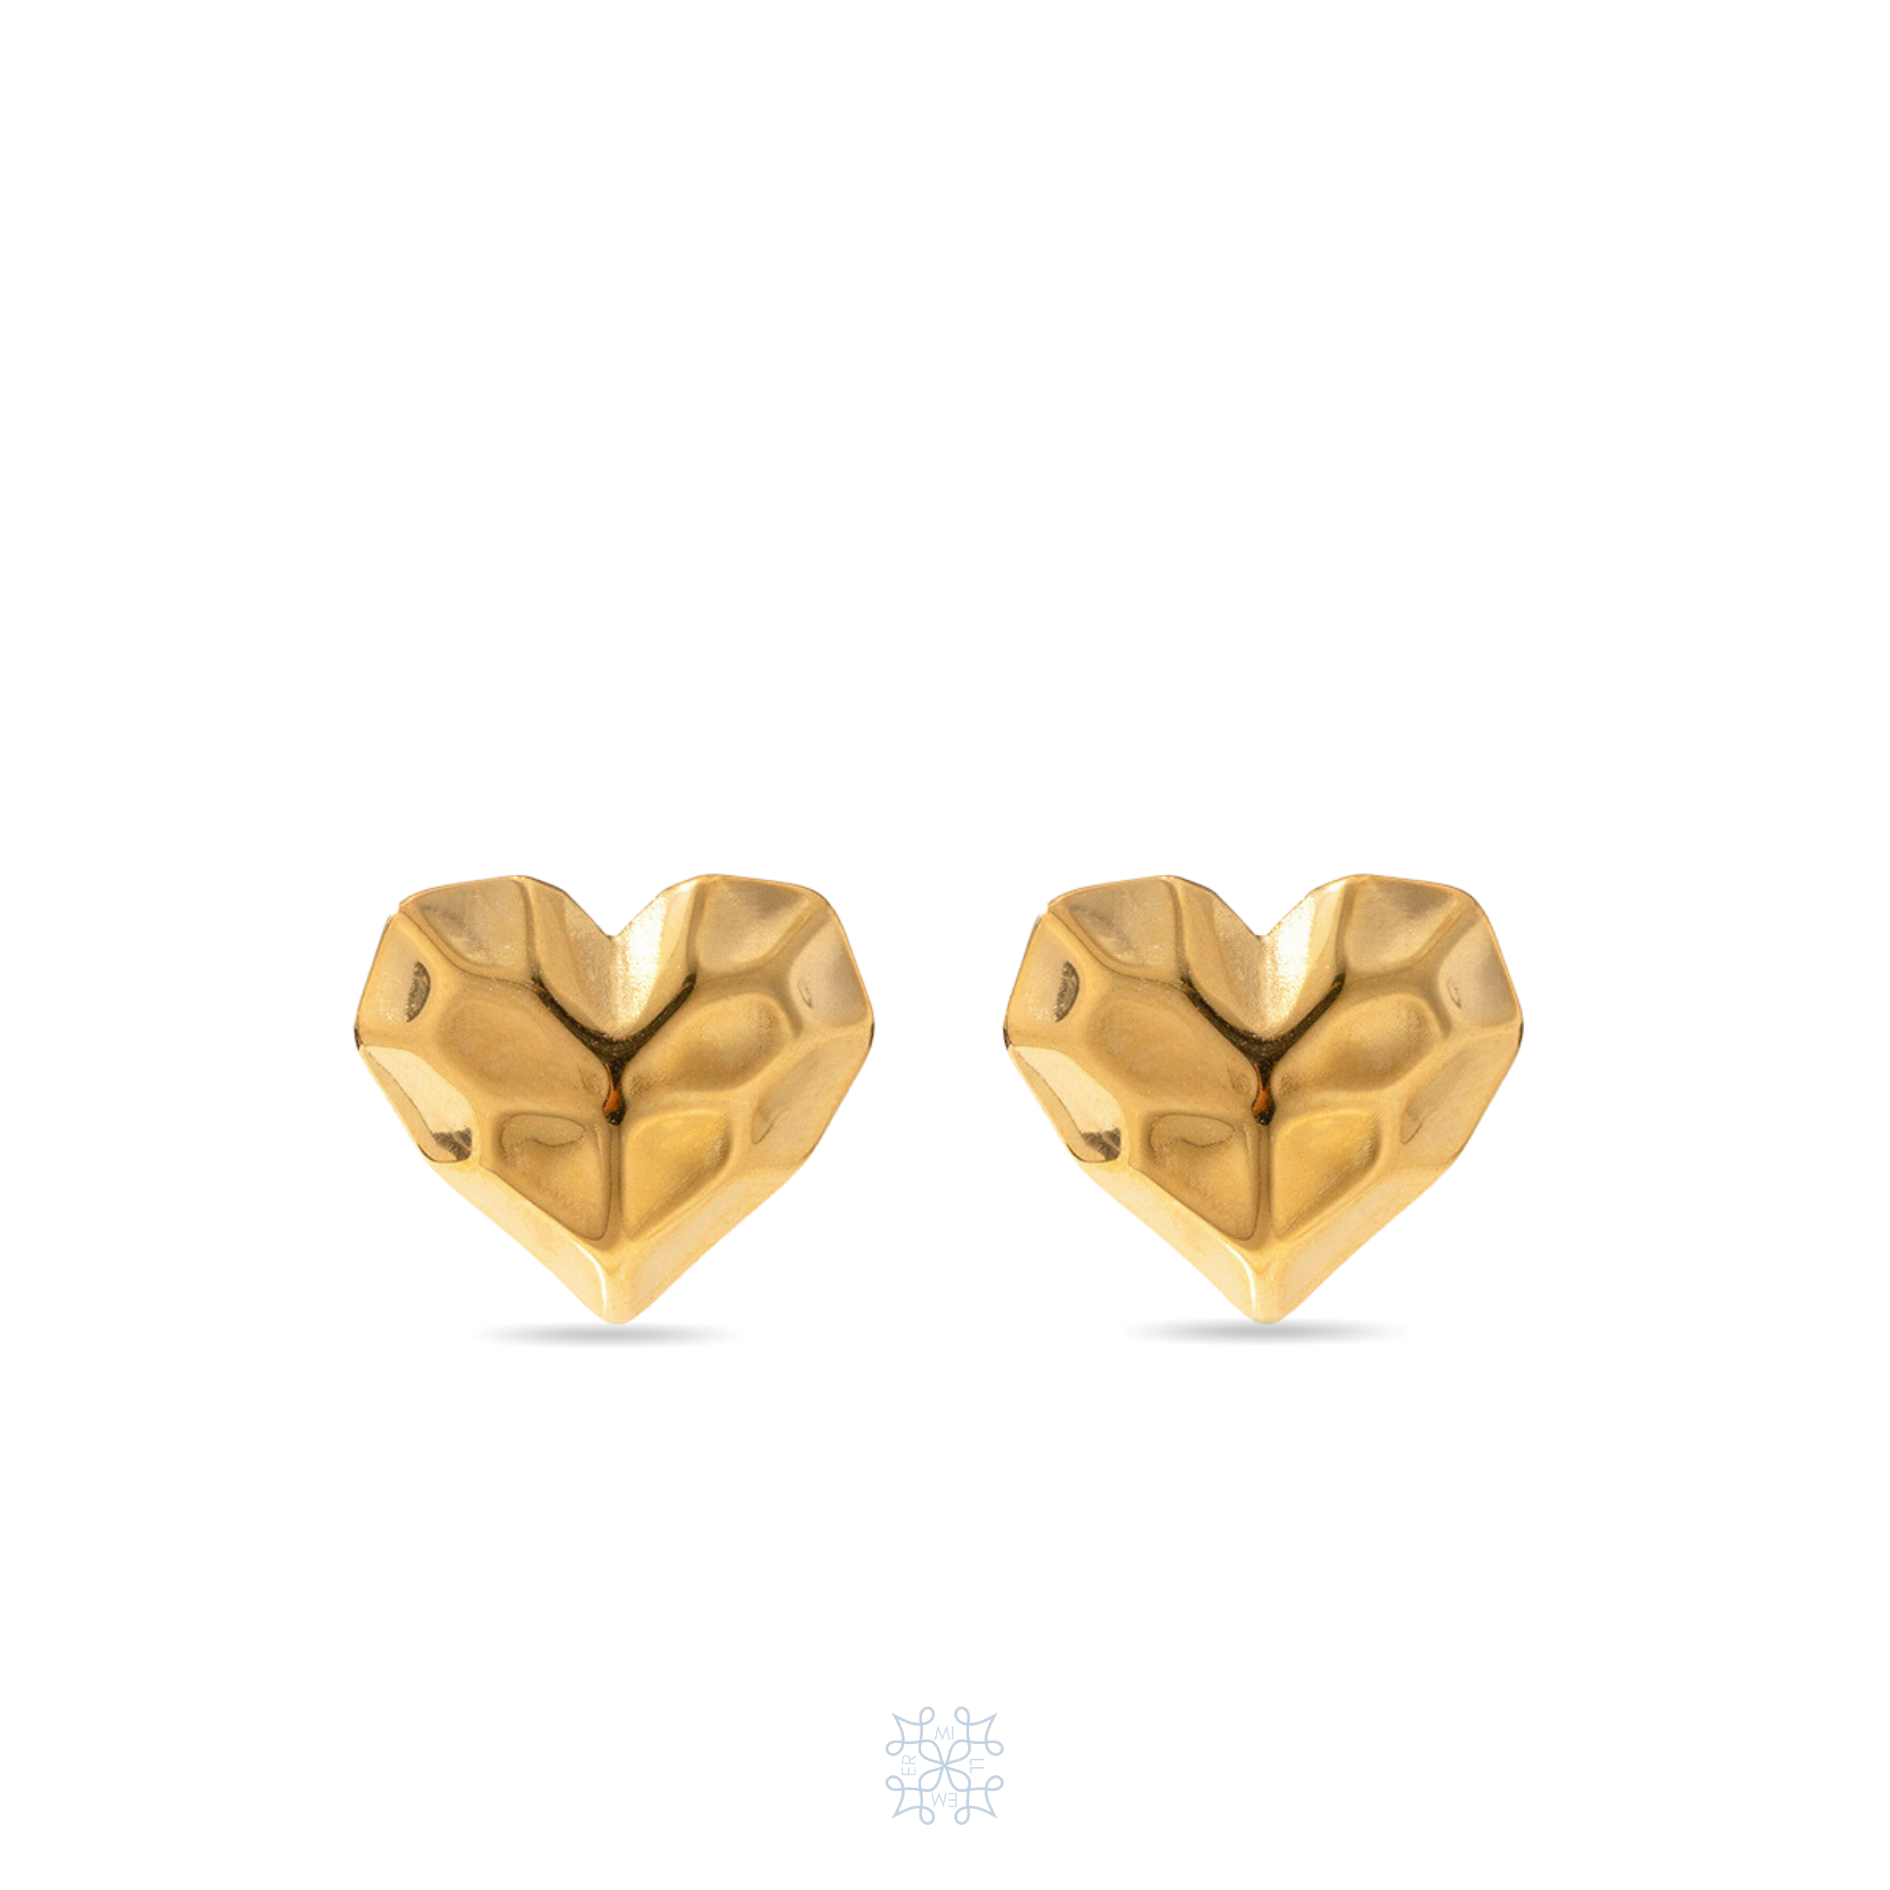 Heart shapped gold earrings. Hammered surface of the stud earrings. waterproof earrings